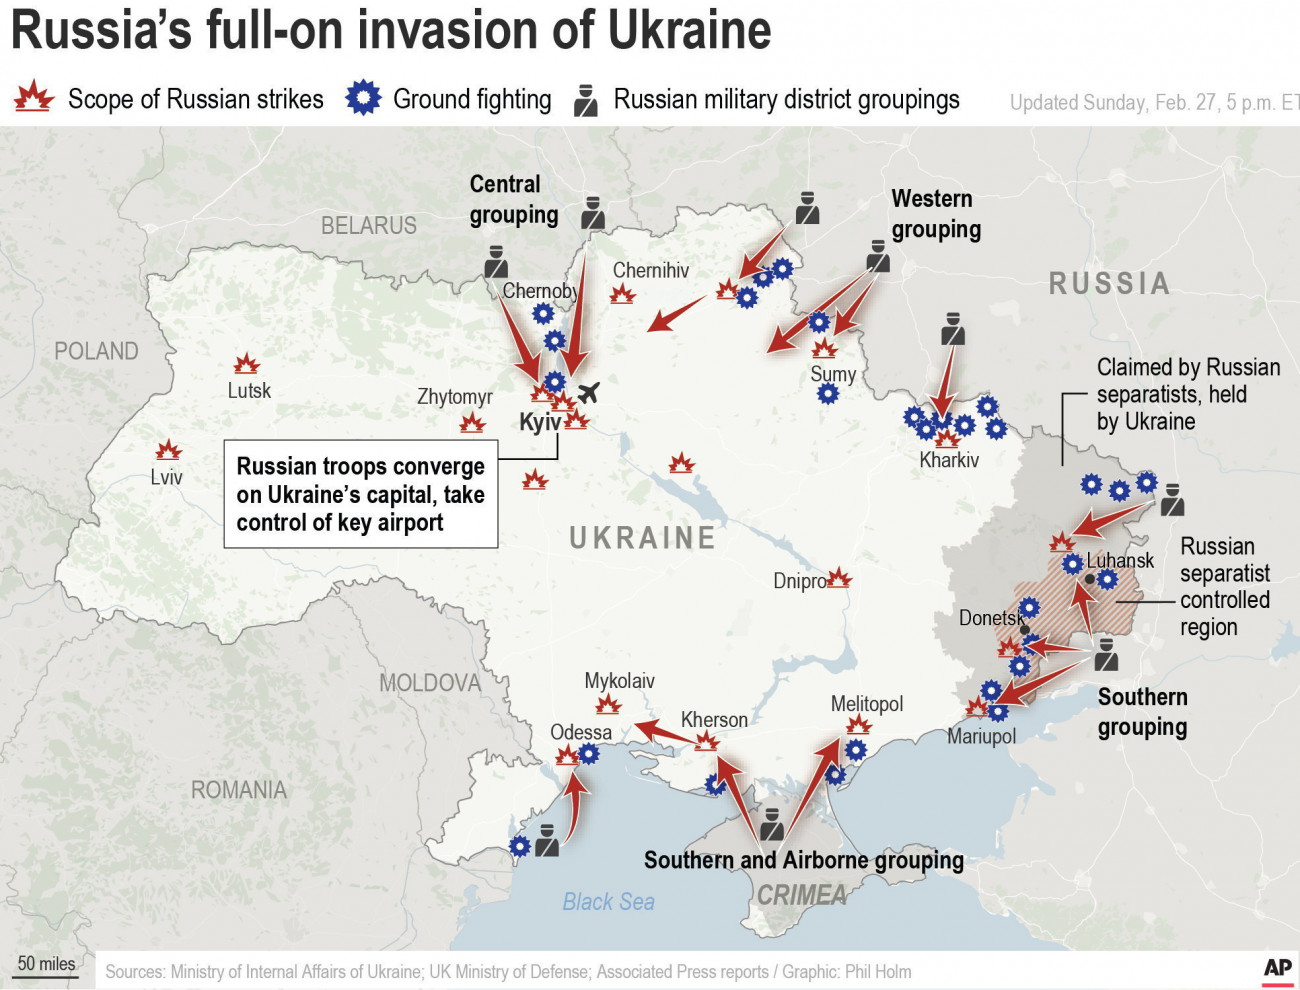 Ukrajna, 2022. február 28.
2022. február 28-án közreadott kép egy térképről, amely a február 27-én 17 óráig Ukrajnában bekövetkezett orosz légicsapások és szárazföldi támadások helyszíneit szemlélteti. Vlagyimir Putyin orosz elnök február 24-én rendelte el katonai művelet végrehajtását Ukrajnában.
MTI/AP/AP Staff